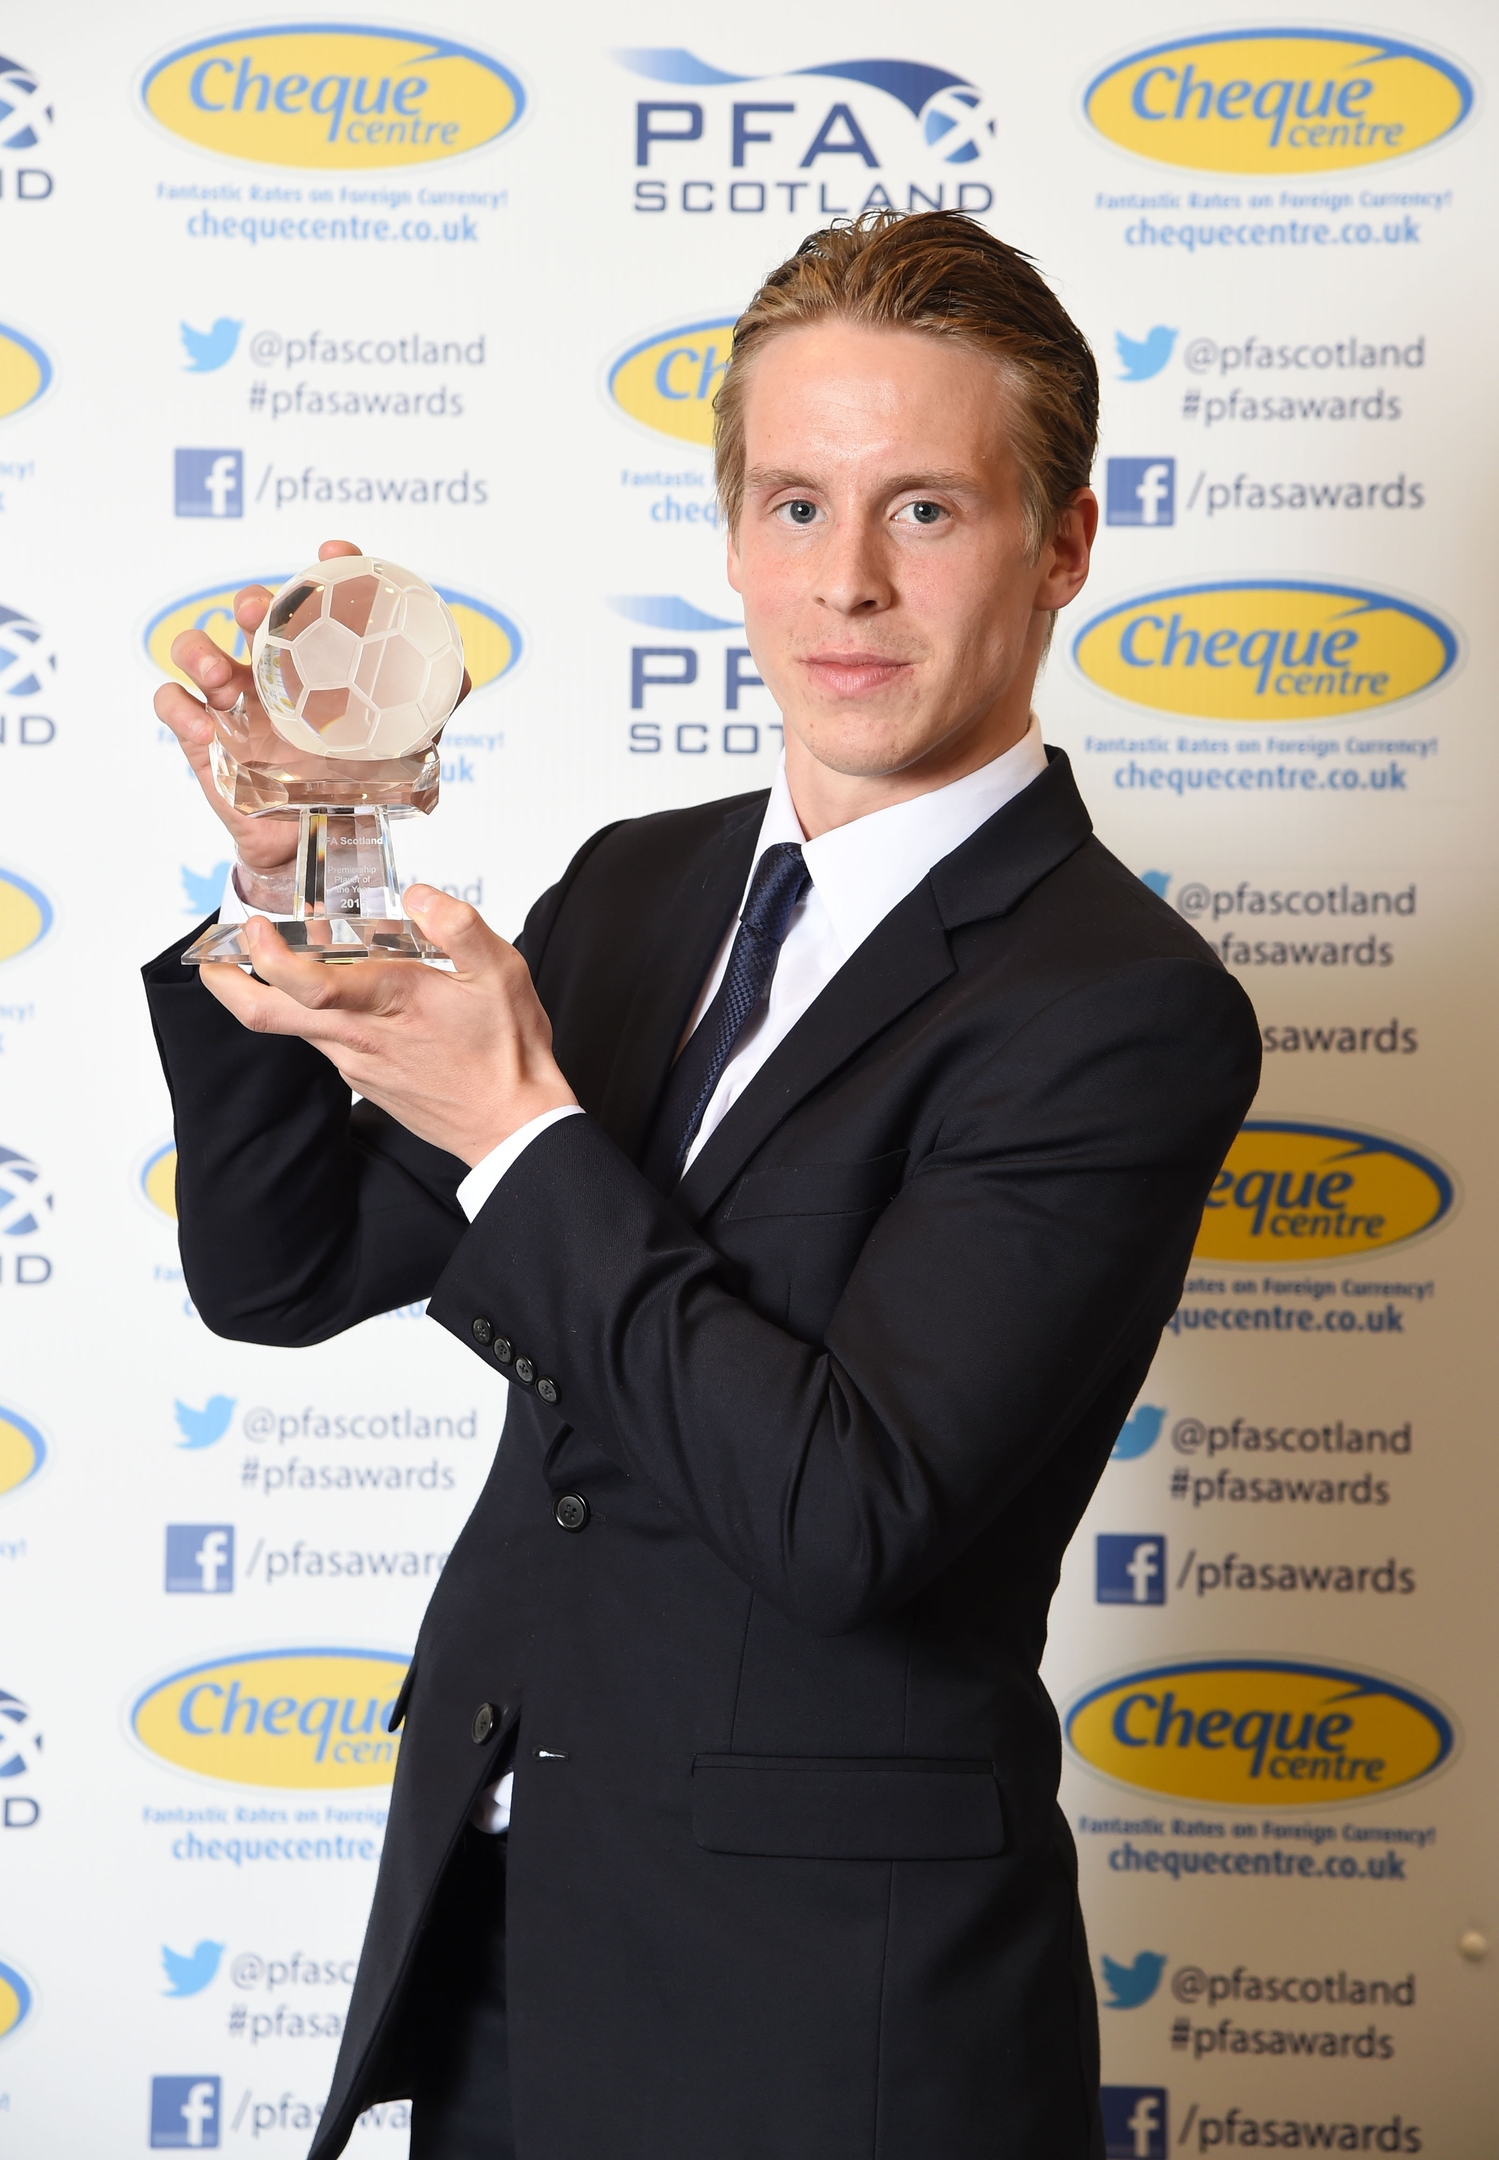 Stefan Johansen won the 2014/15 PFA Scotland Player of the Year Award